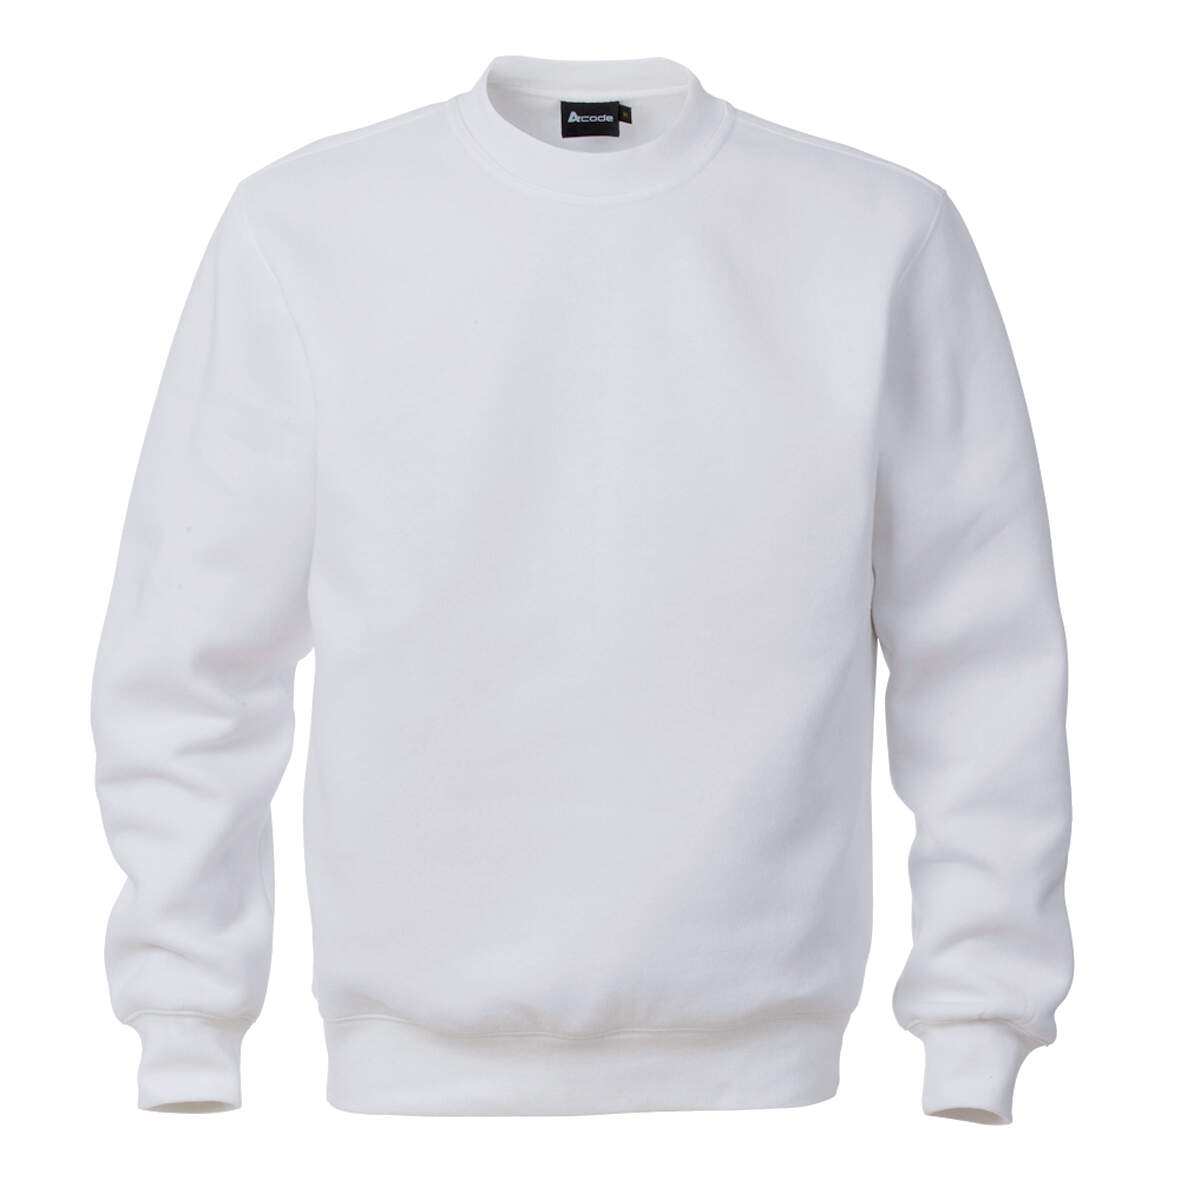 1204482 - Sweatshirt weiß 100225